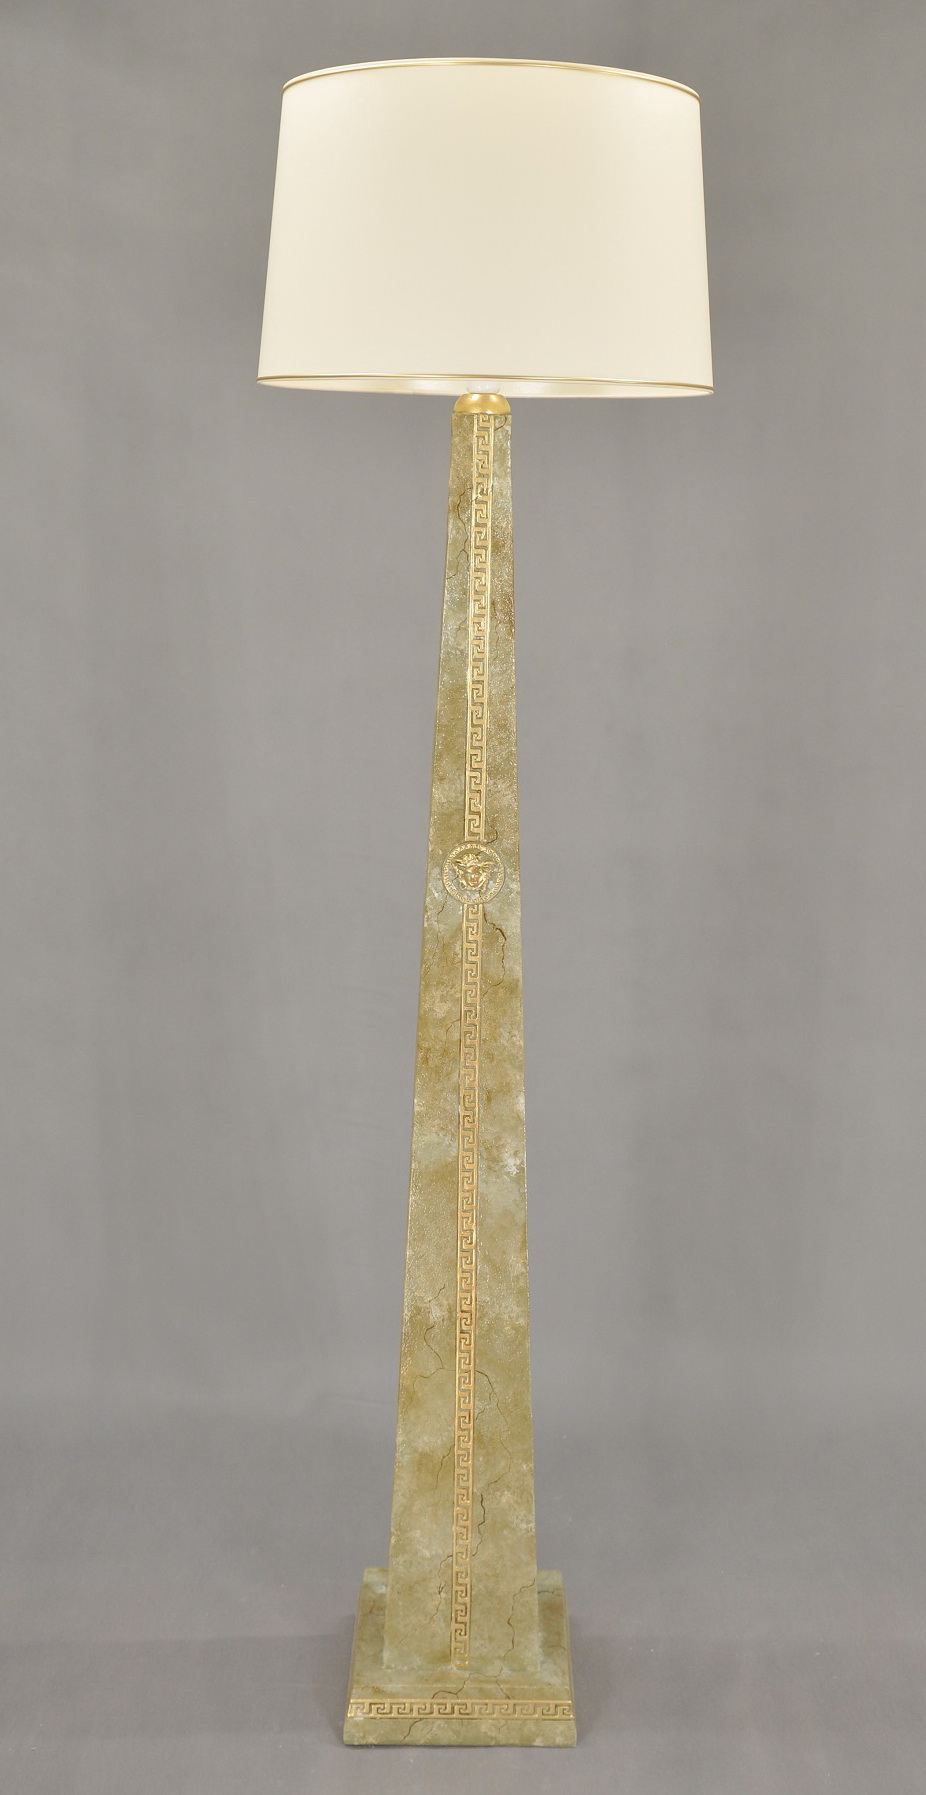 Lampa vysoká 187 cm - col.124 Zakázková výroba